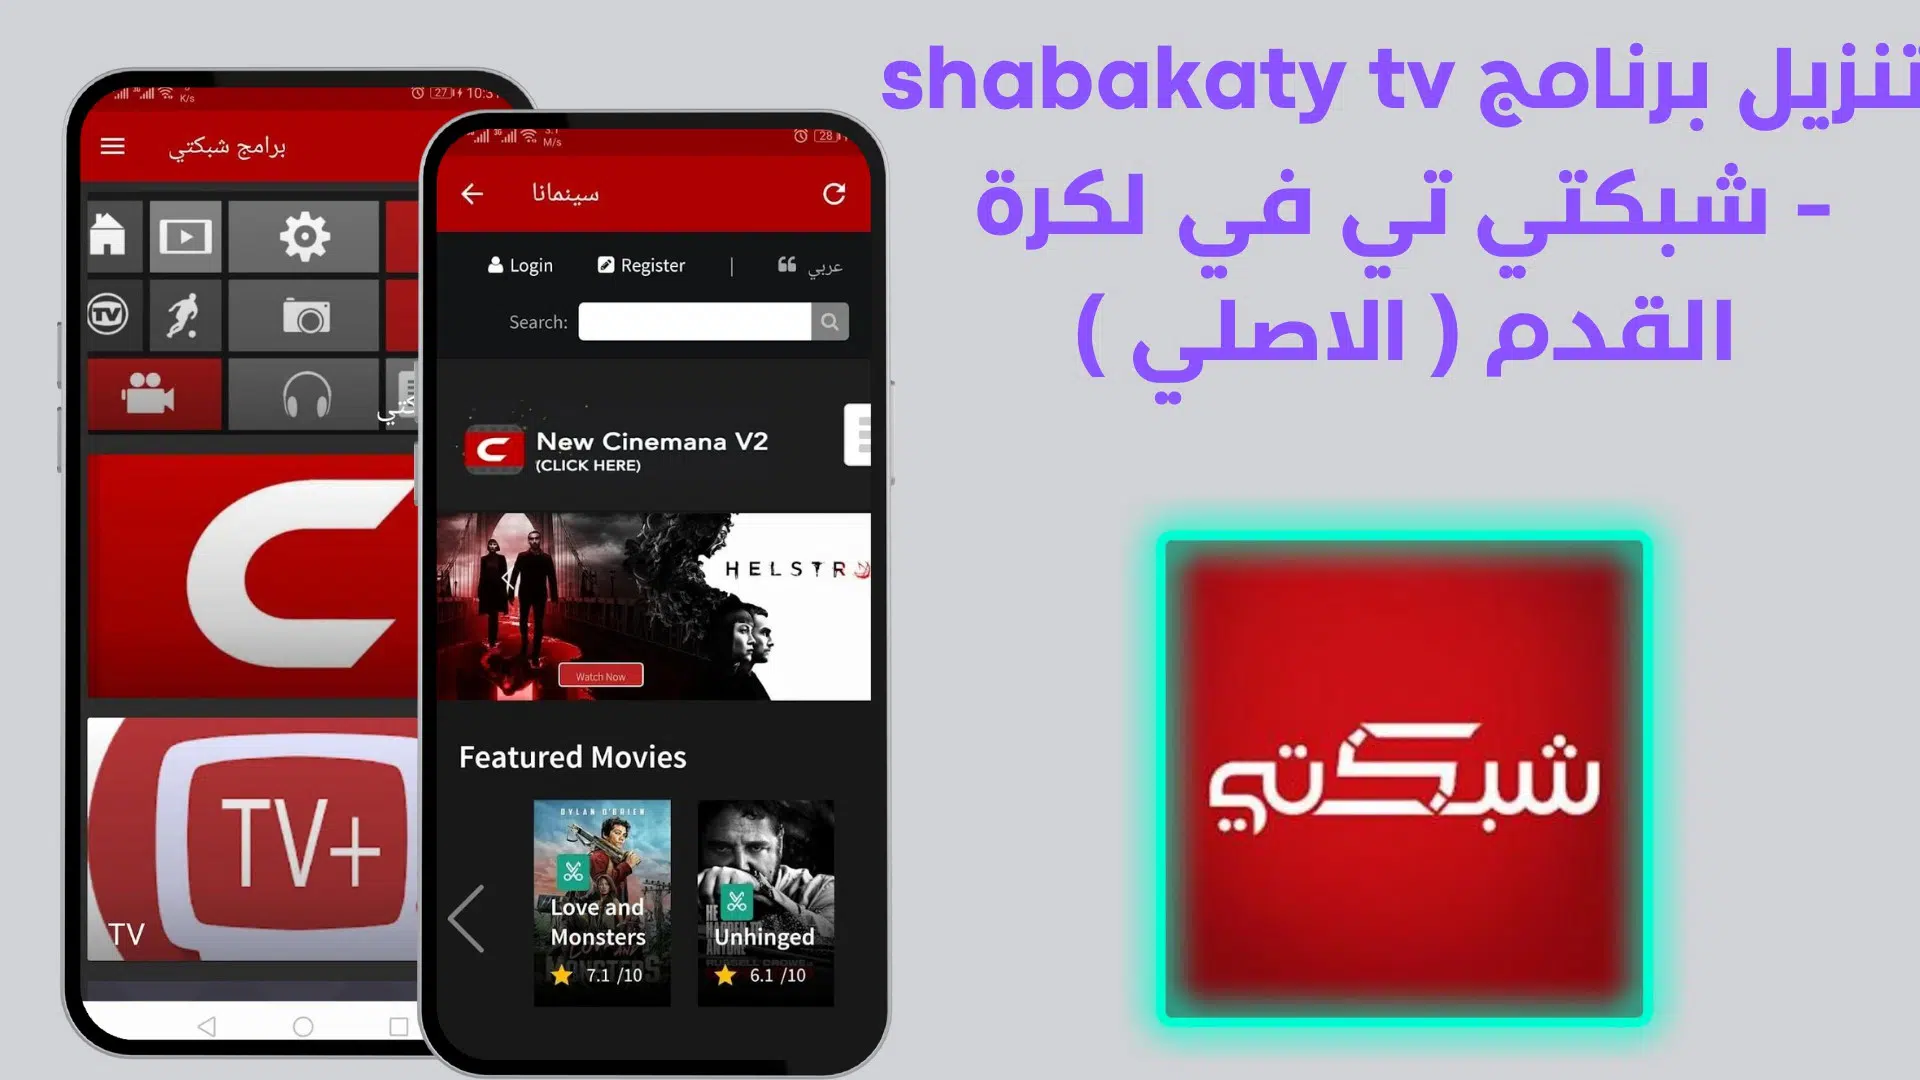 تنزيل برنامج shabakaty tv - شبكتي تي في لكرة القدم ( الاصلي ) 1